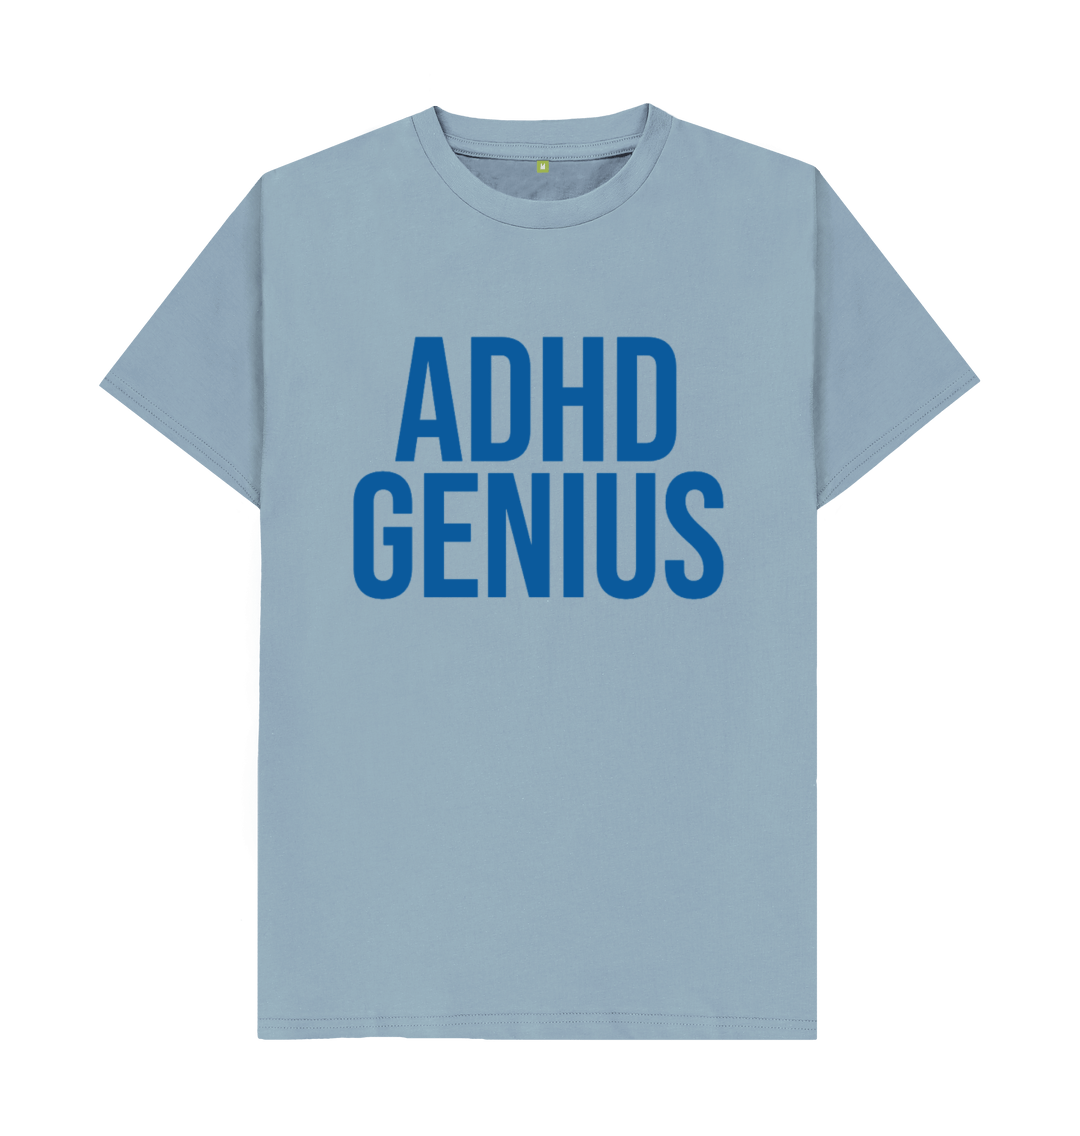 ADHD Genius